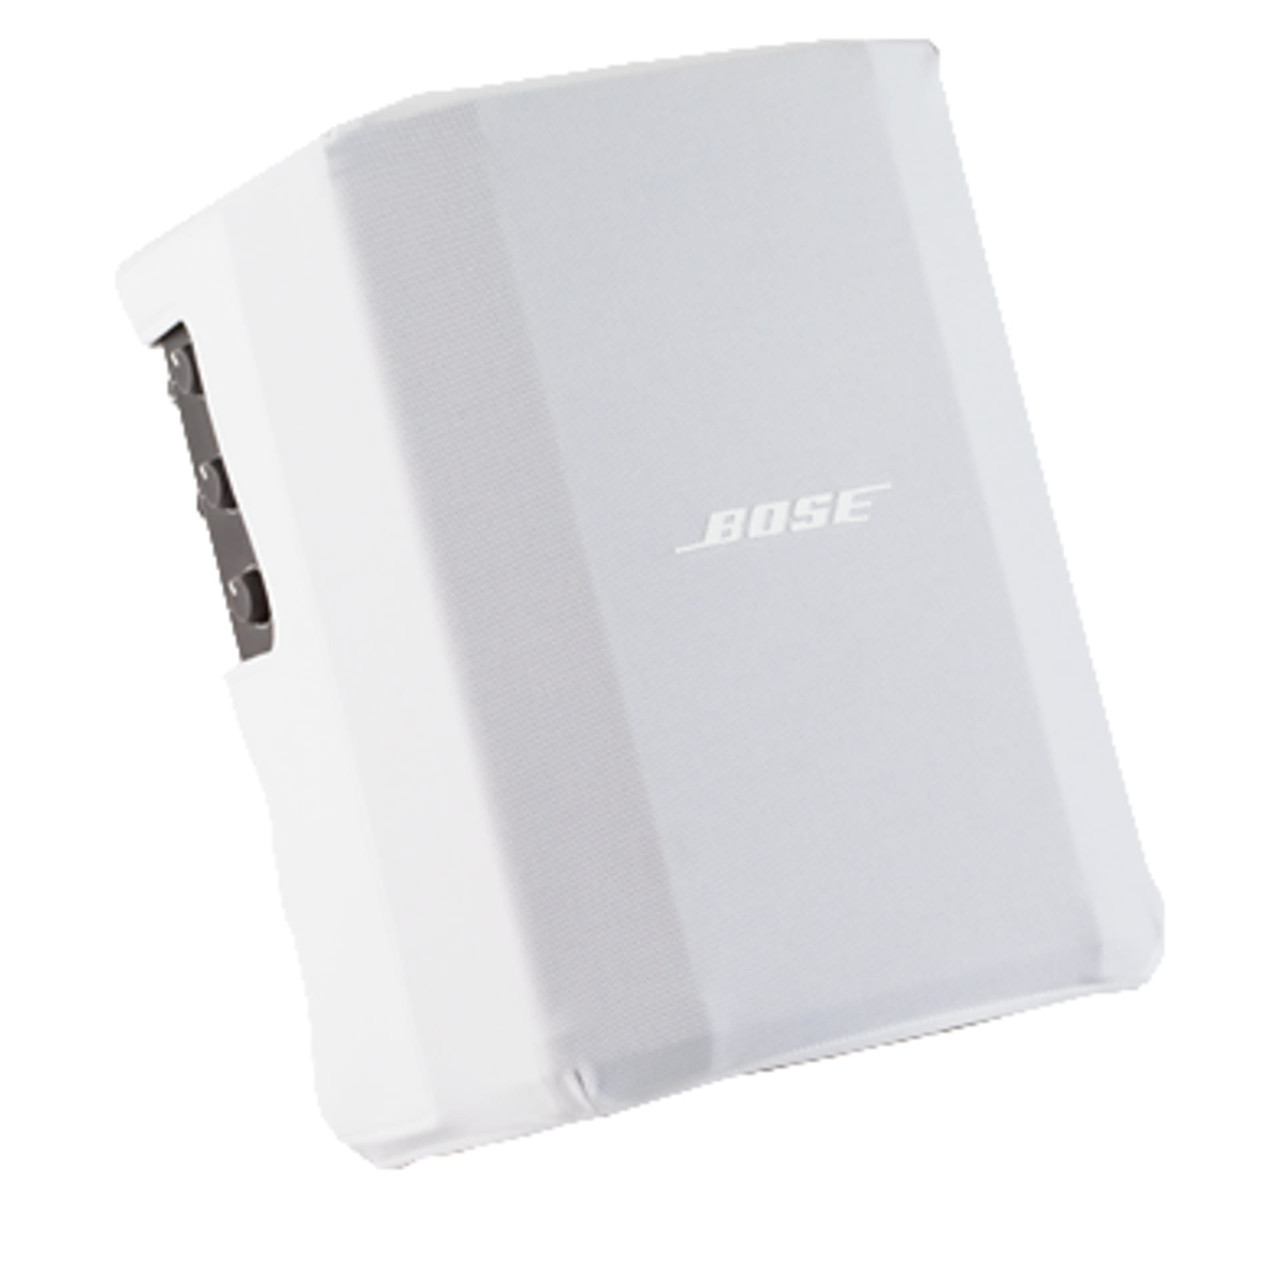 Bose S1 Pro Plus COVER - RADIO COLON